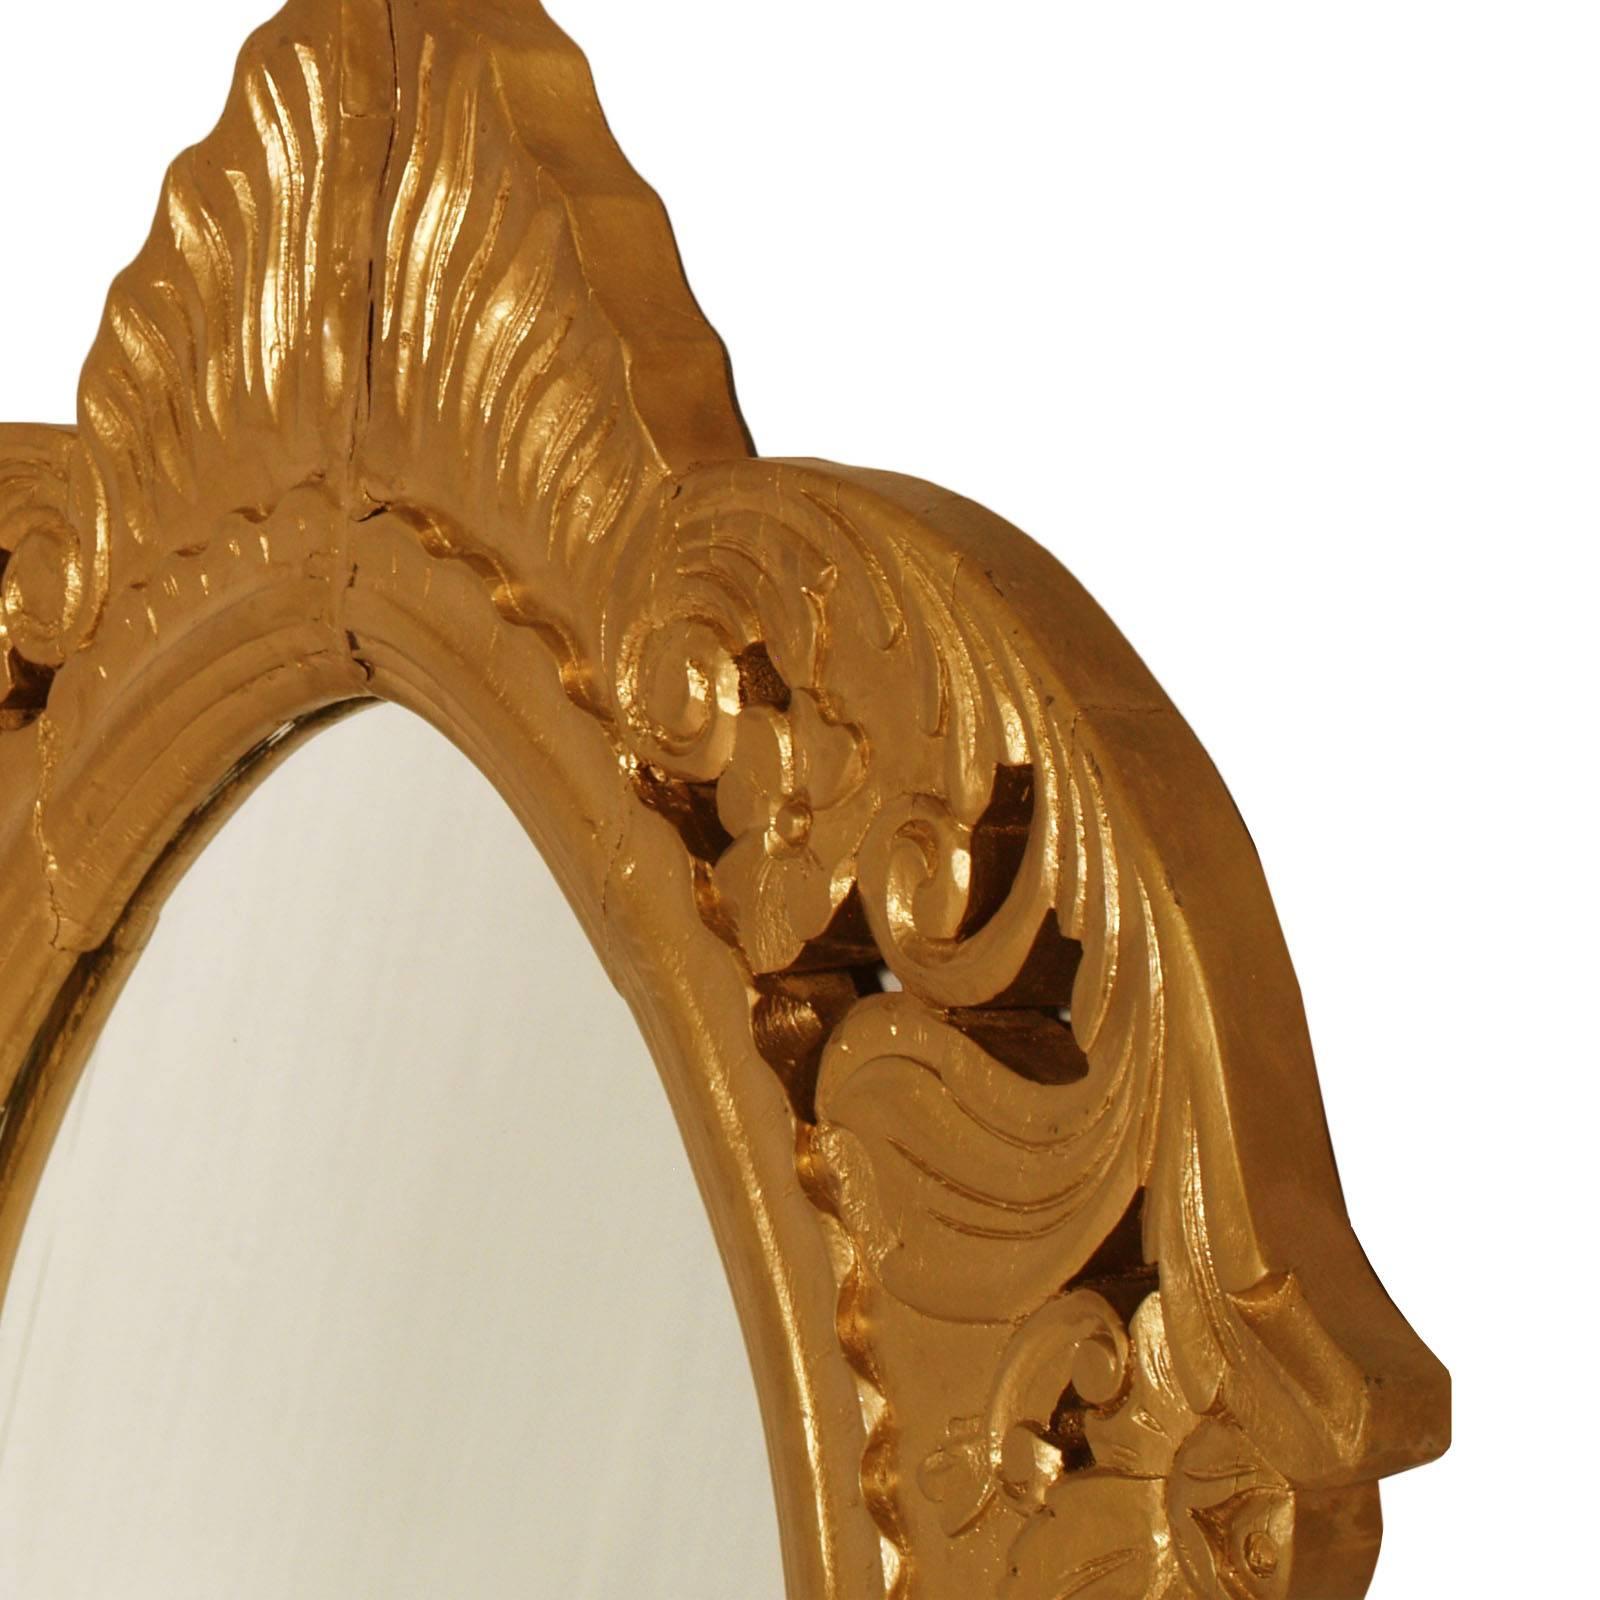 miroir baroque arabe massif du 18e siècle, sculpté à la main, bois doré

Mesures cm : H 105 x L 85 x P 3.